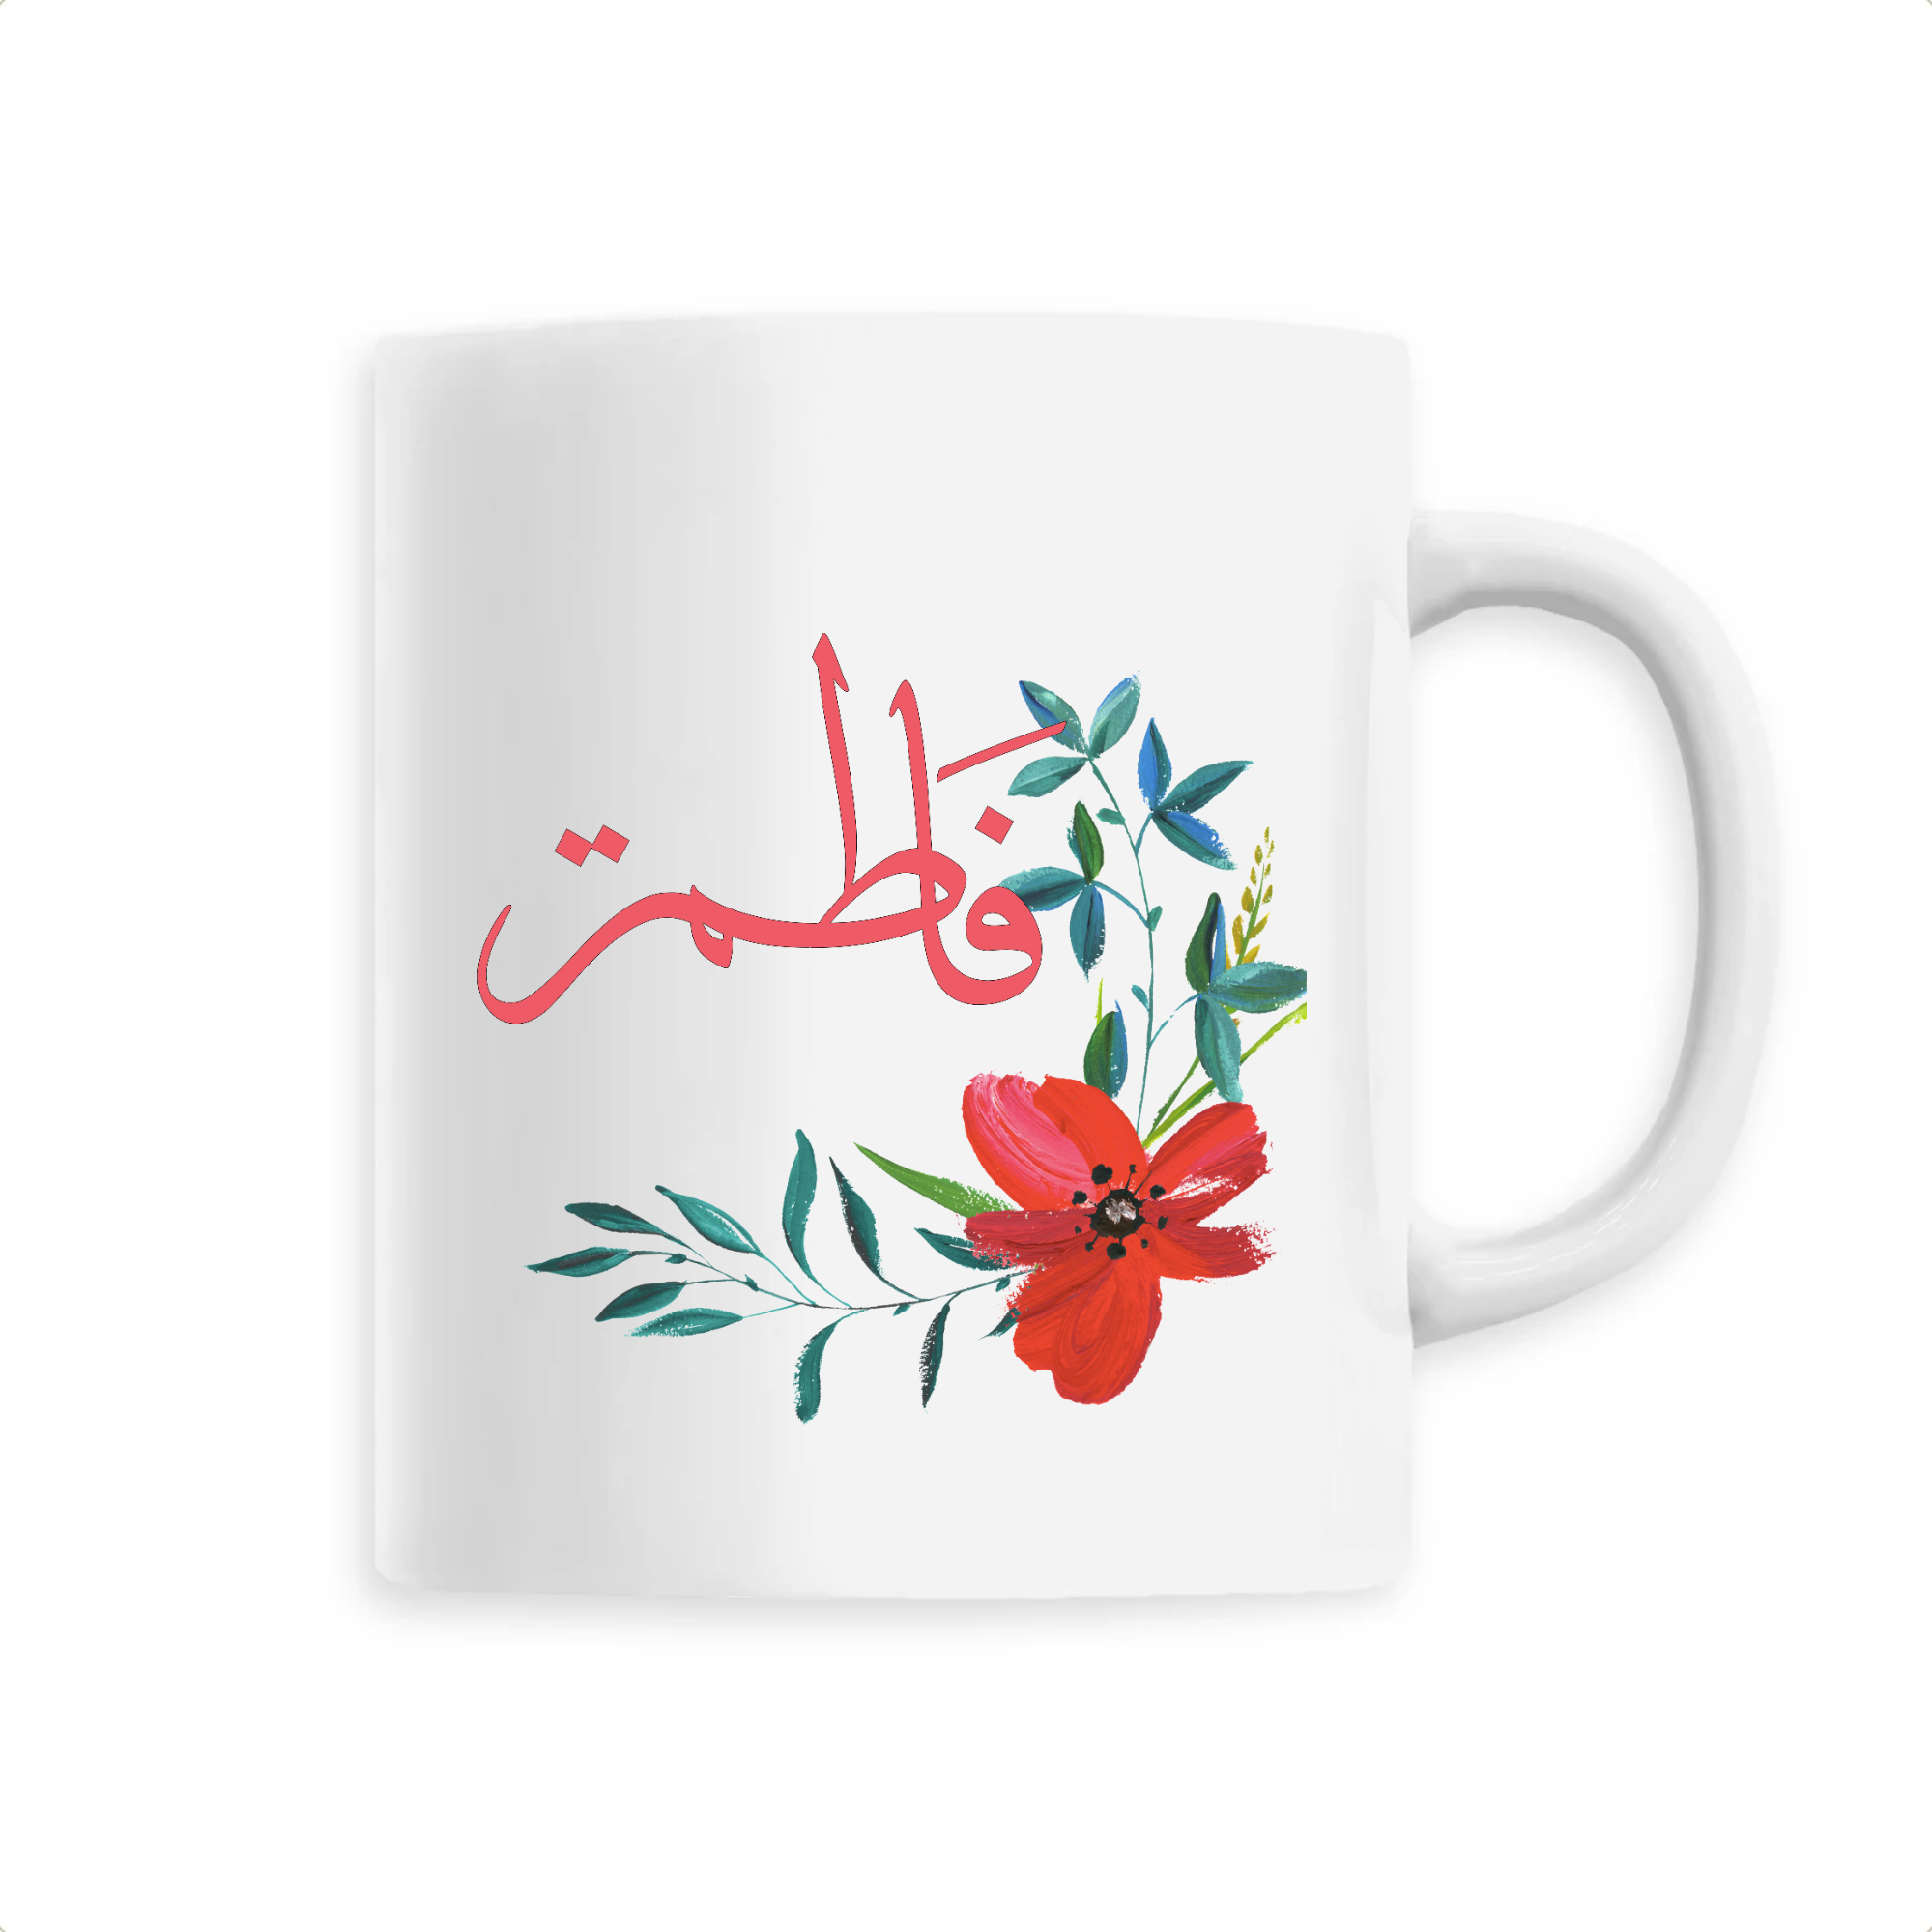 Fatima - Mug Calligraphie Arabe